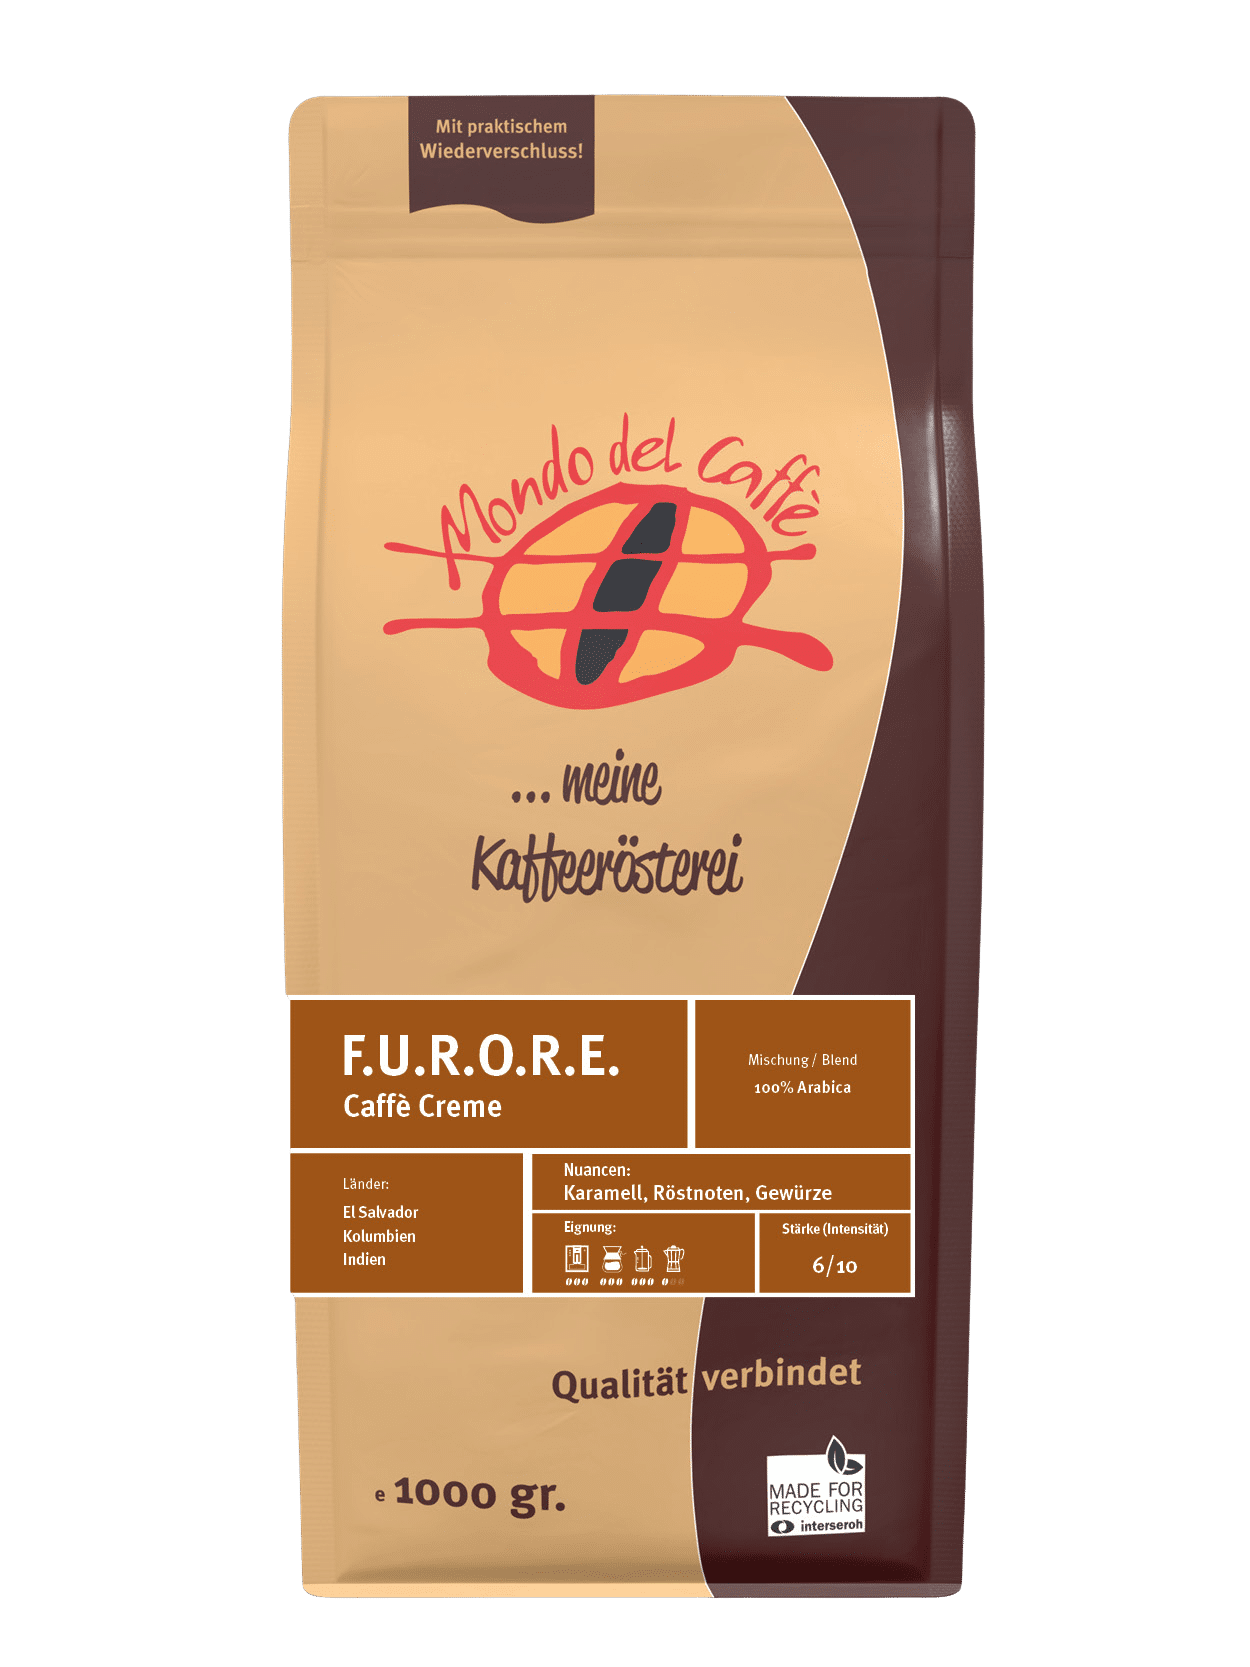 F.U.R.O.R.E. (Furore, Caffè Crema) 100 % Arabica